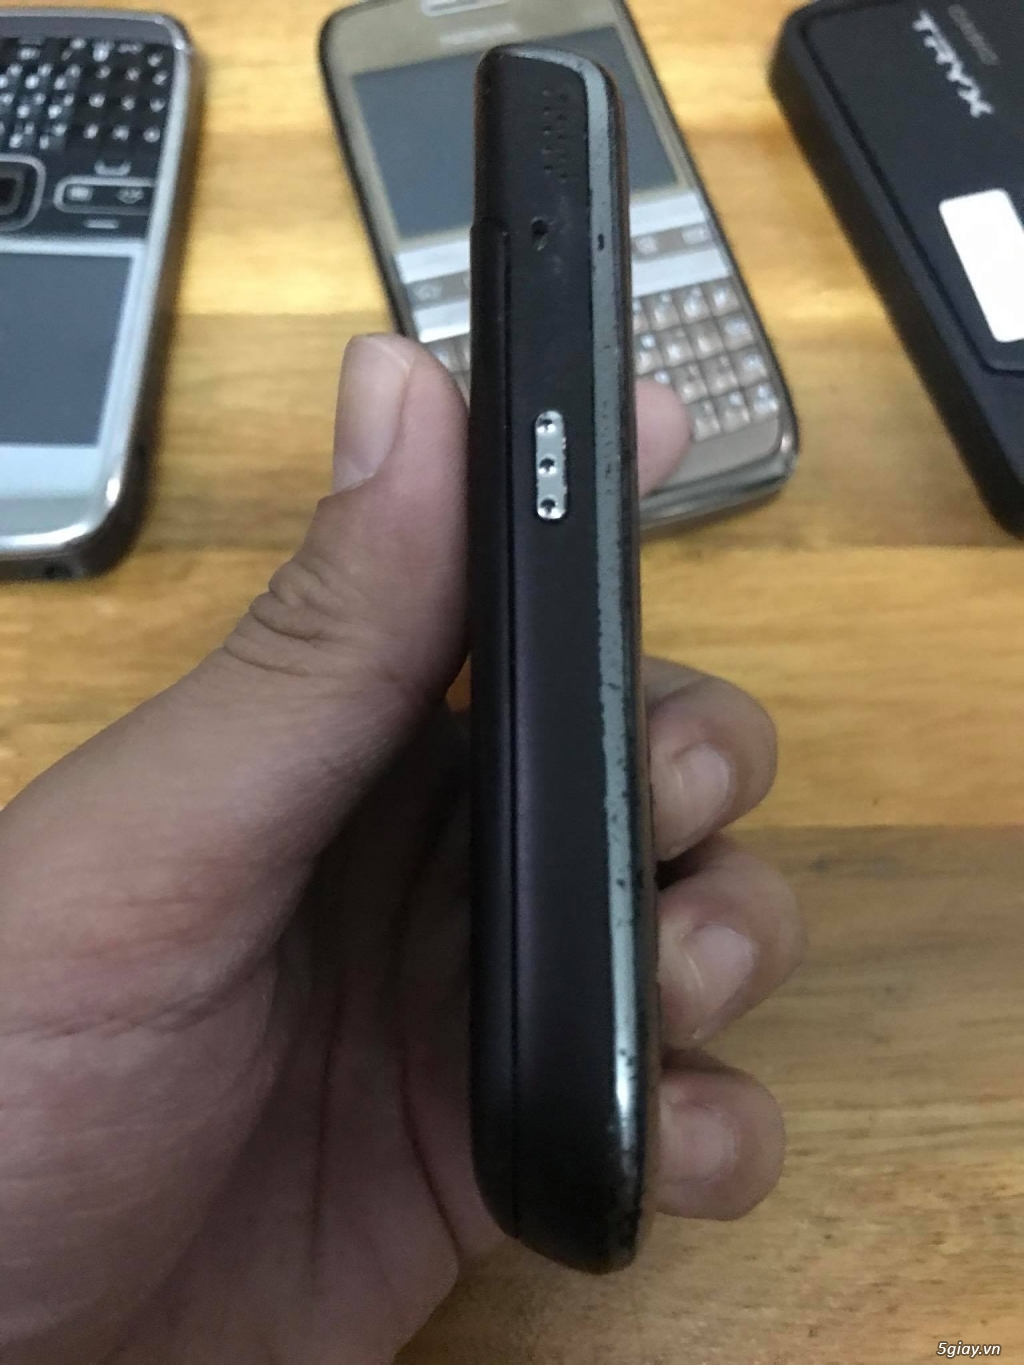 Bán BB 9650 - Nokia E72/C3-01/2700/1208 , mtb cùng ít xác điện thoại. - 3